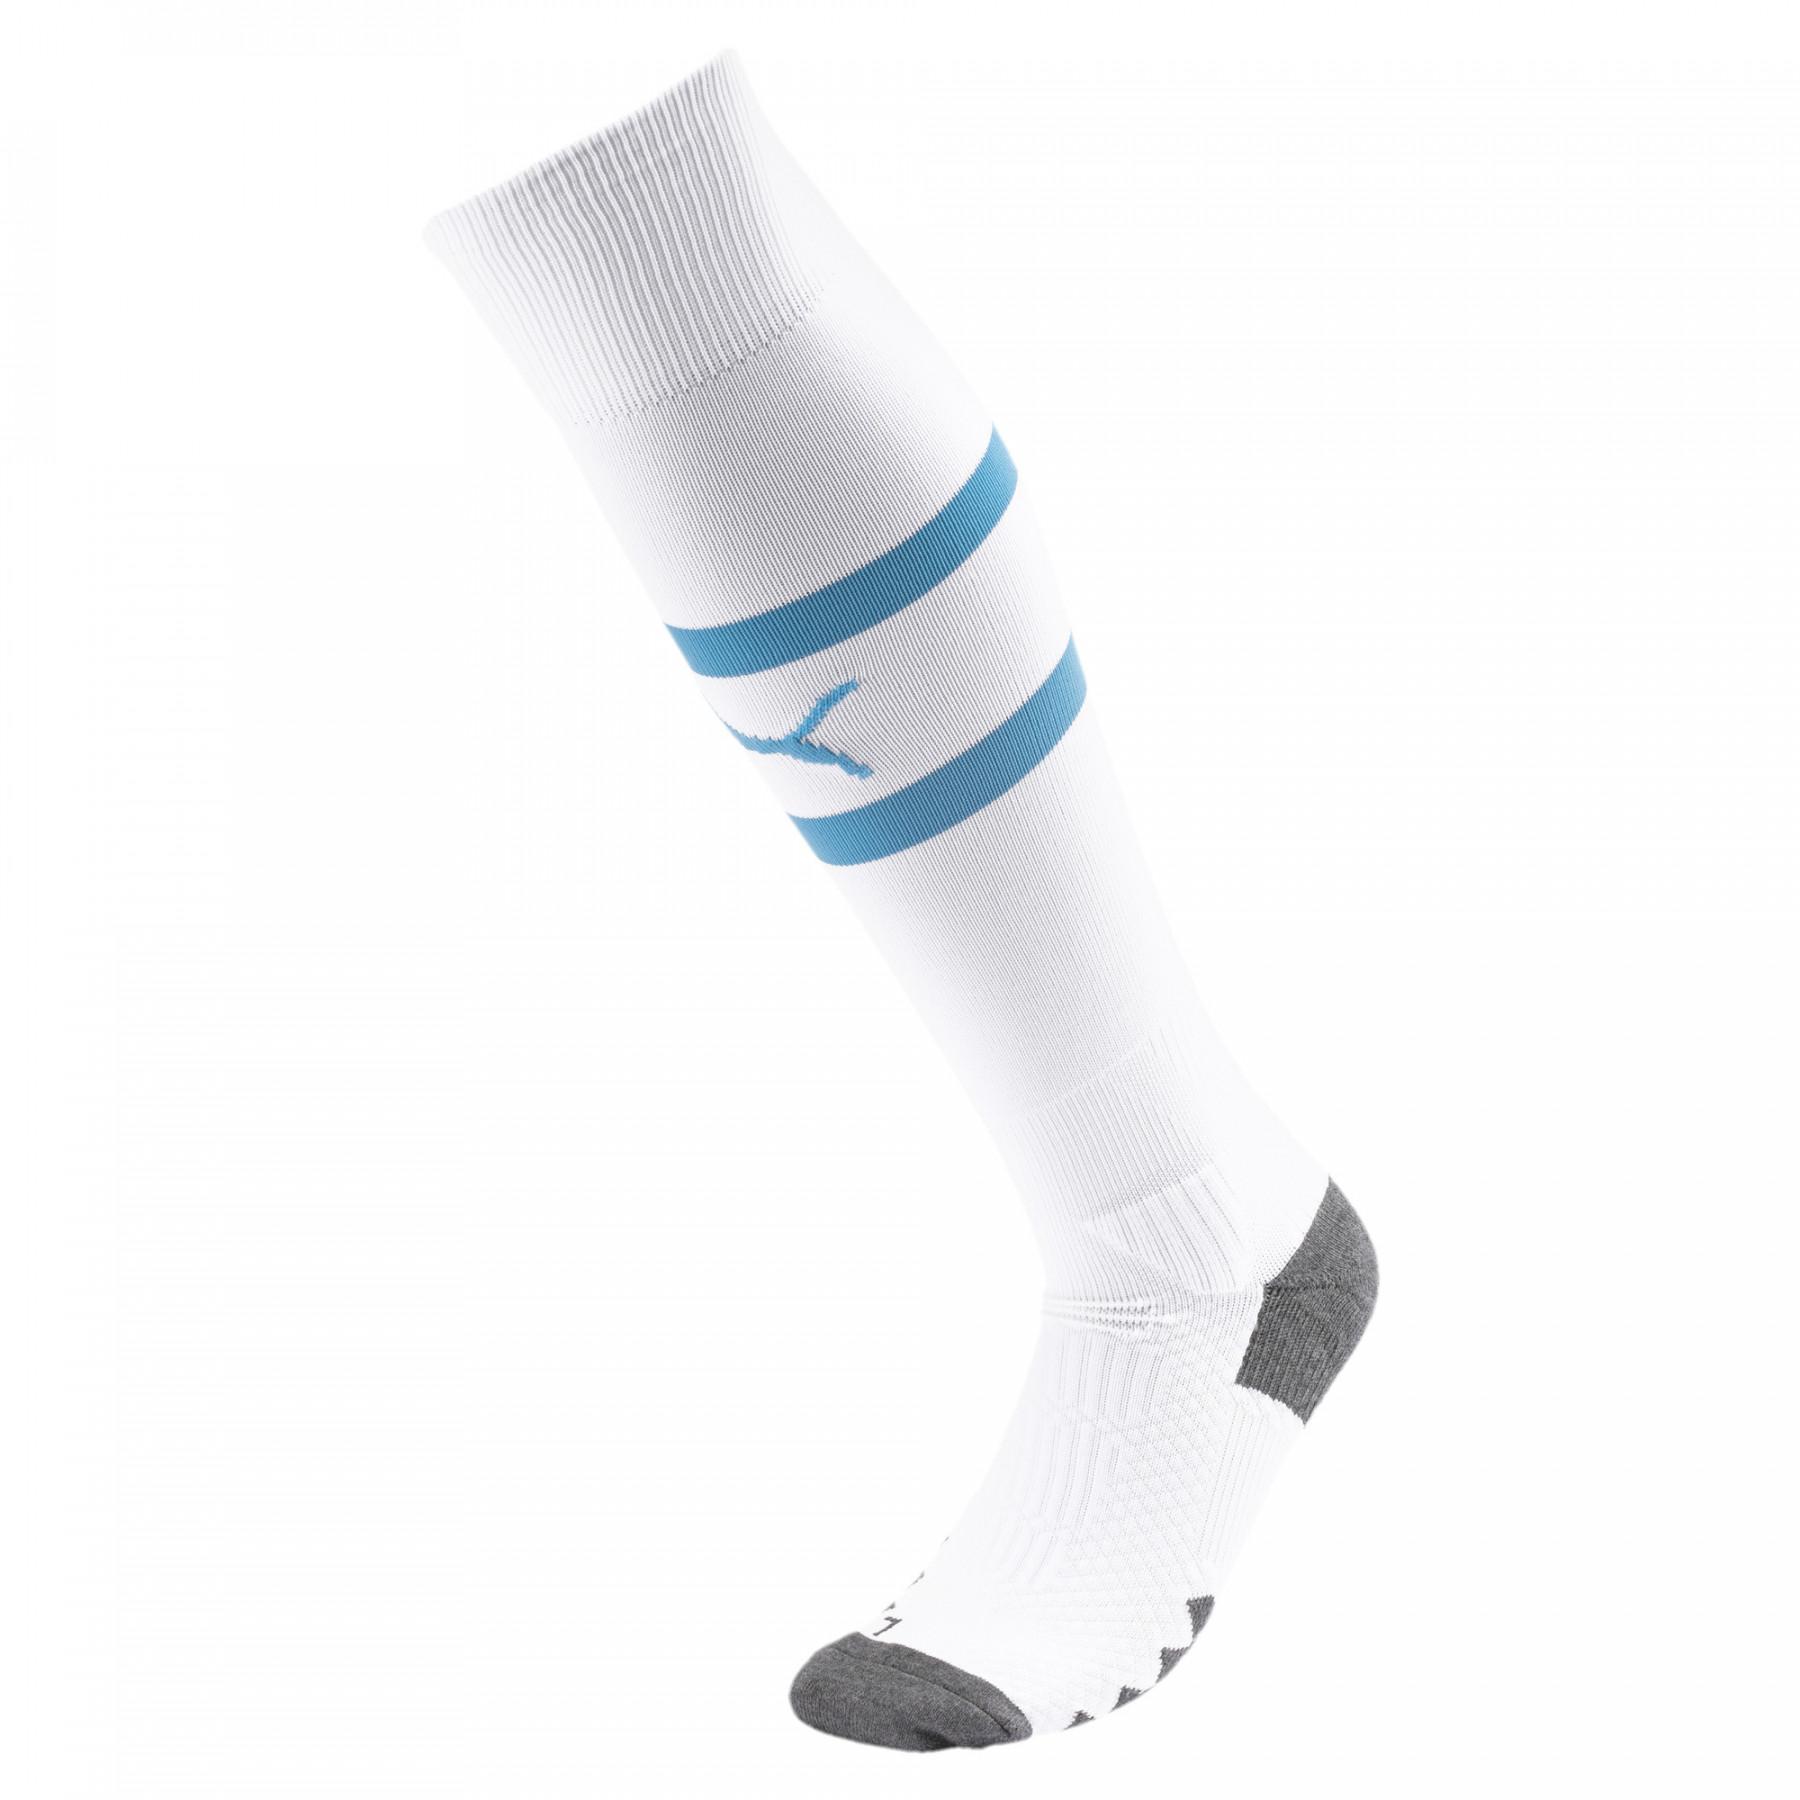 Socks fromomicile OM 2019/20